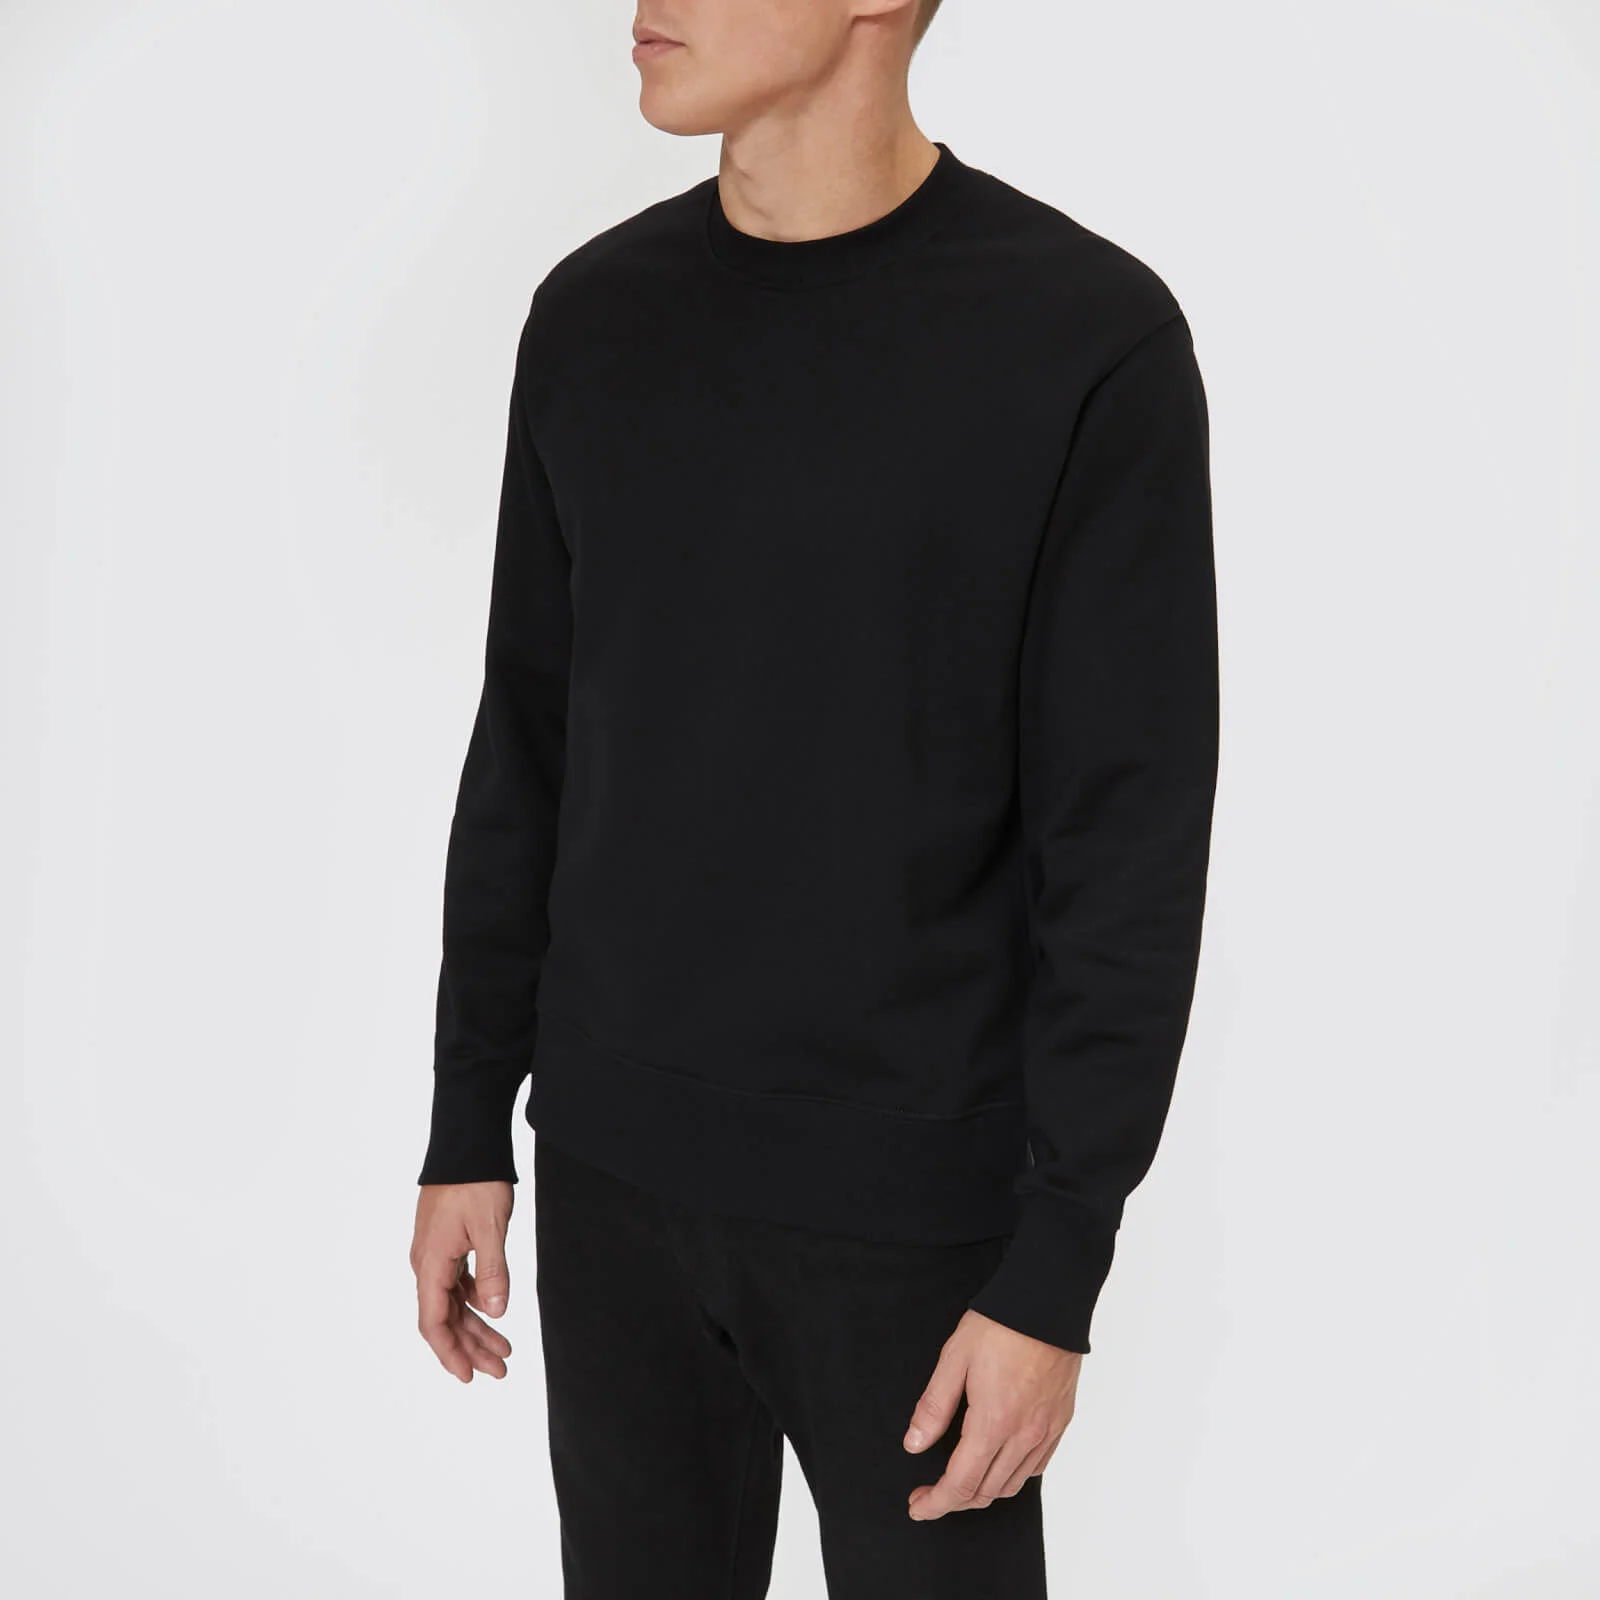 Versus Versace Men's Back Logo Sweatshirt - Black Image 1